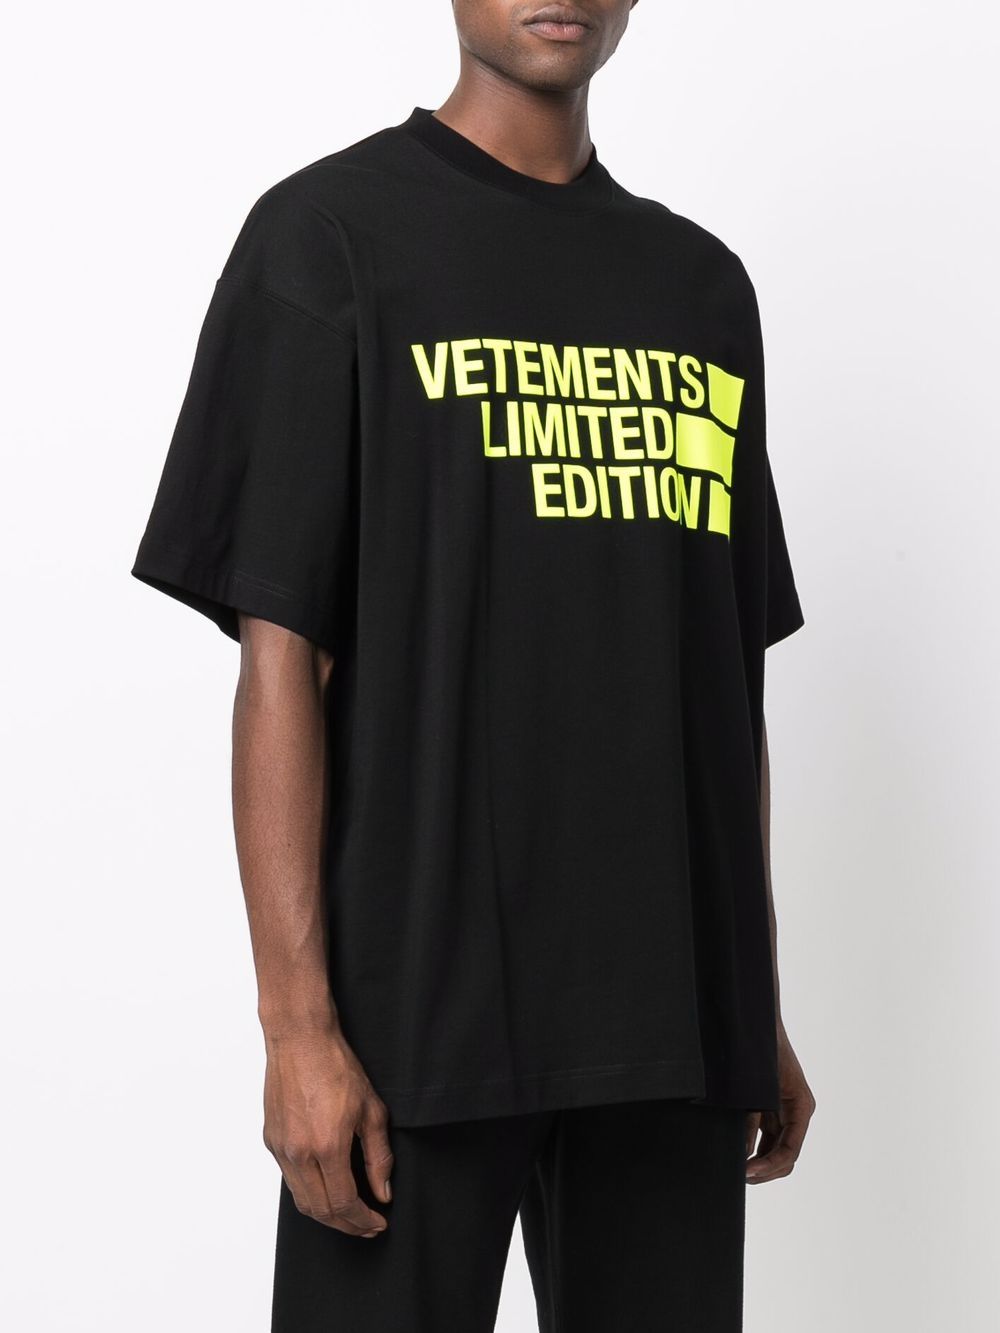 фото Vetements футболка с надписью limited edition